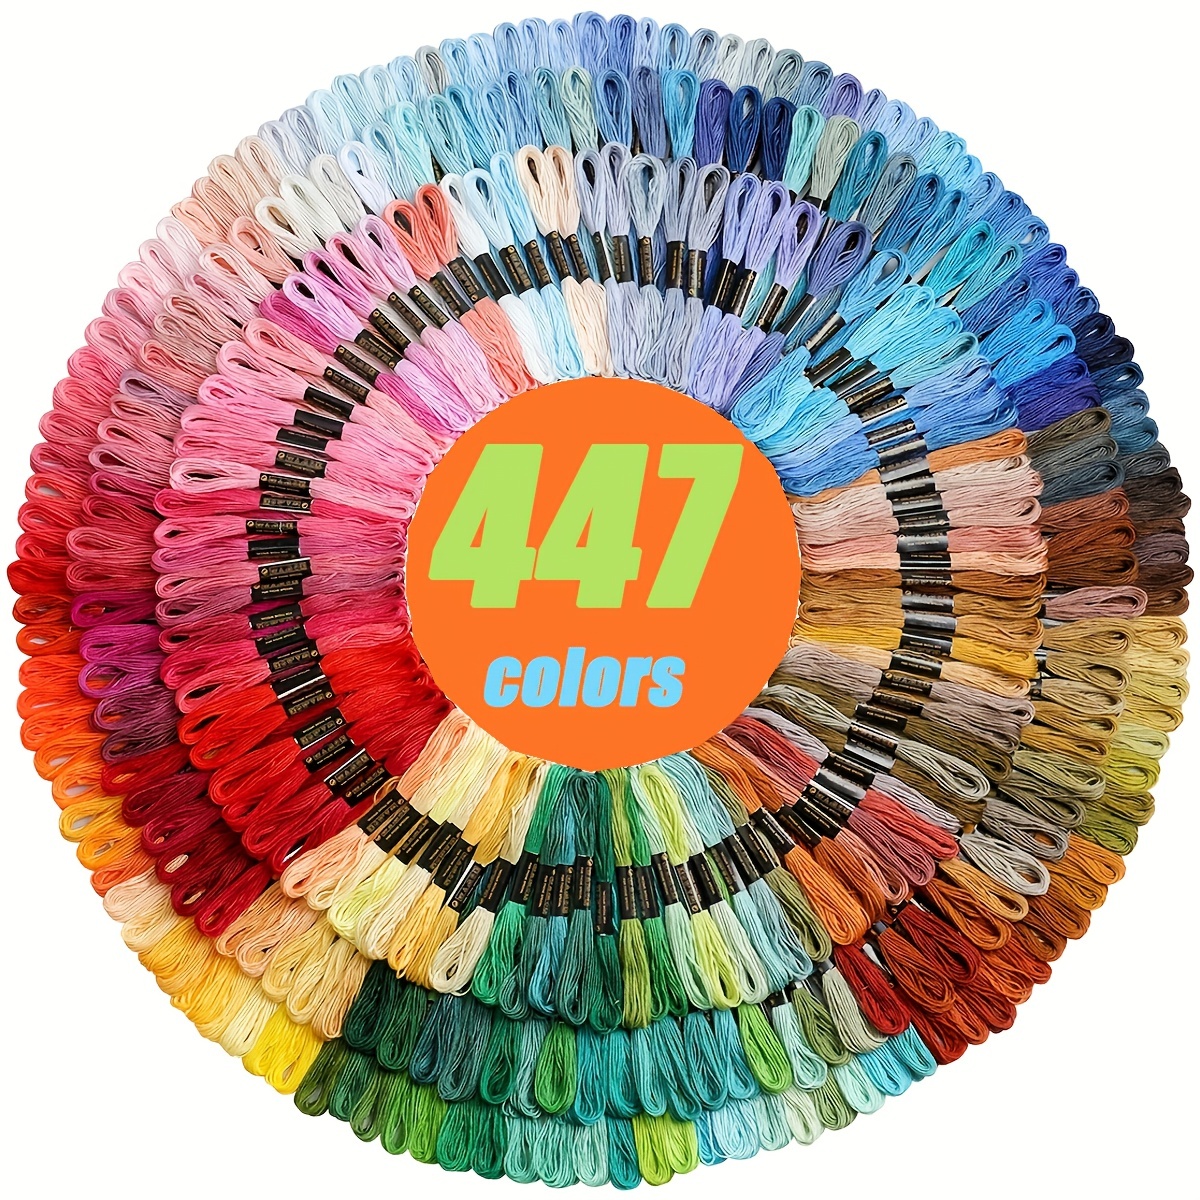 1セットの447色、刺繍糸セット、柔らかいポリエステル糸、刺繍クロスステッチ縫い糸ブレスレット糸、結び目やツイストの作成に適しています（色はランダムで繰り返しません）